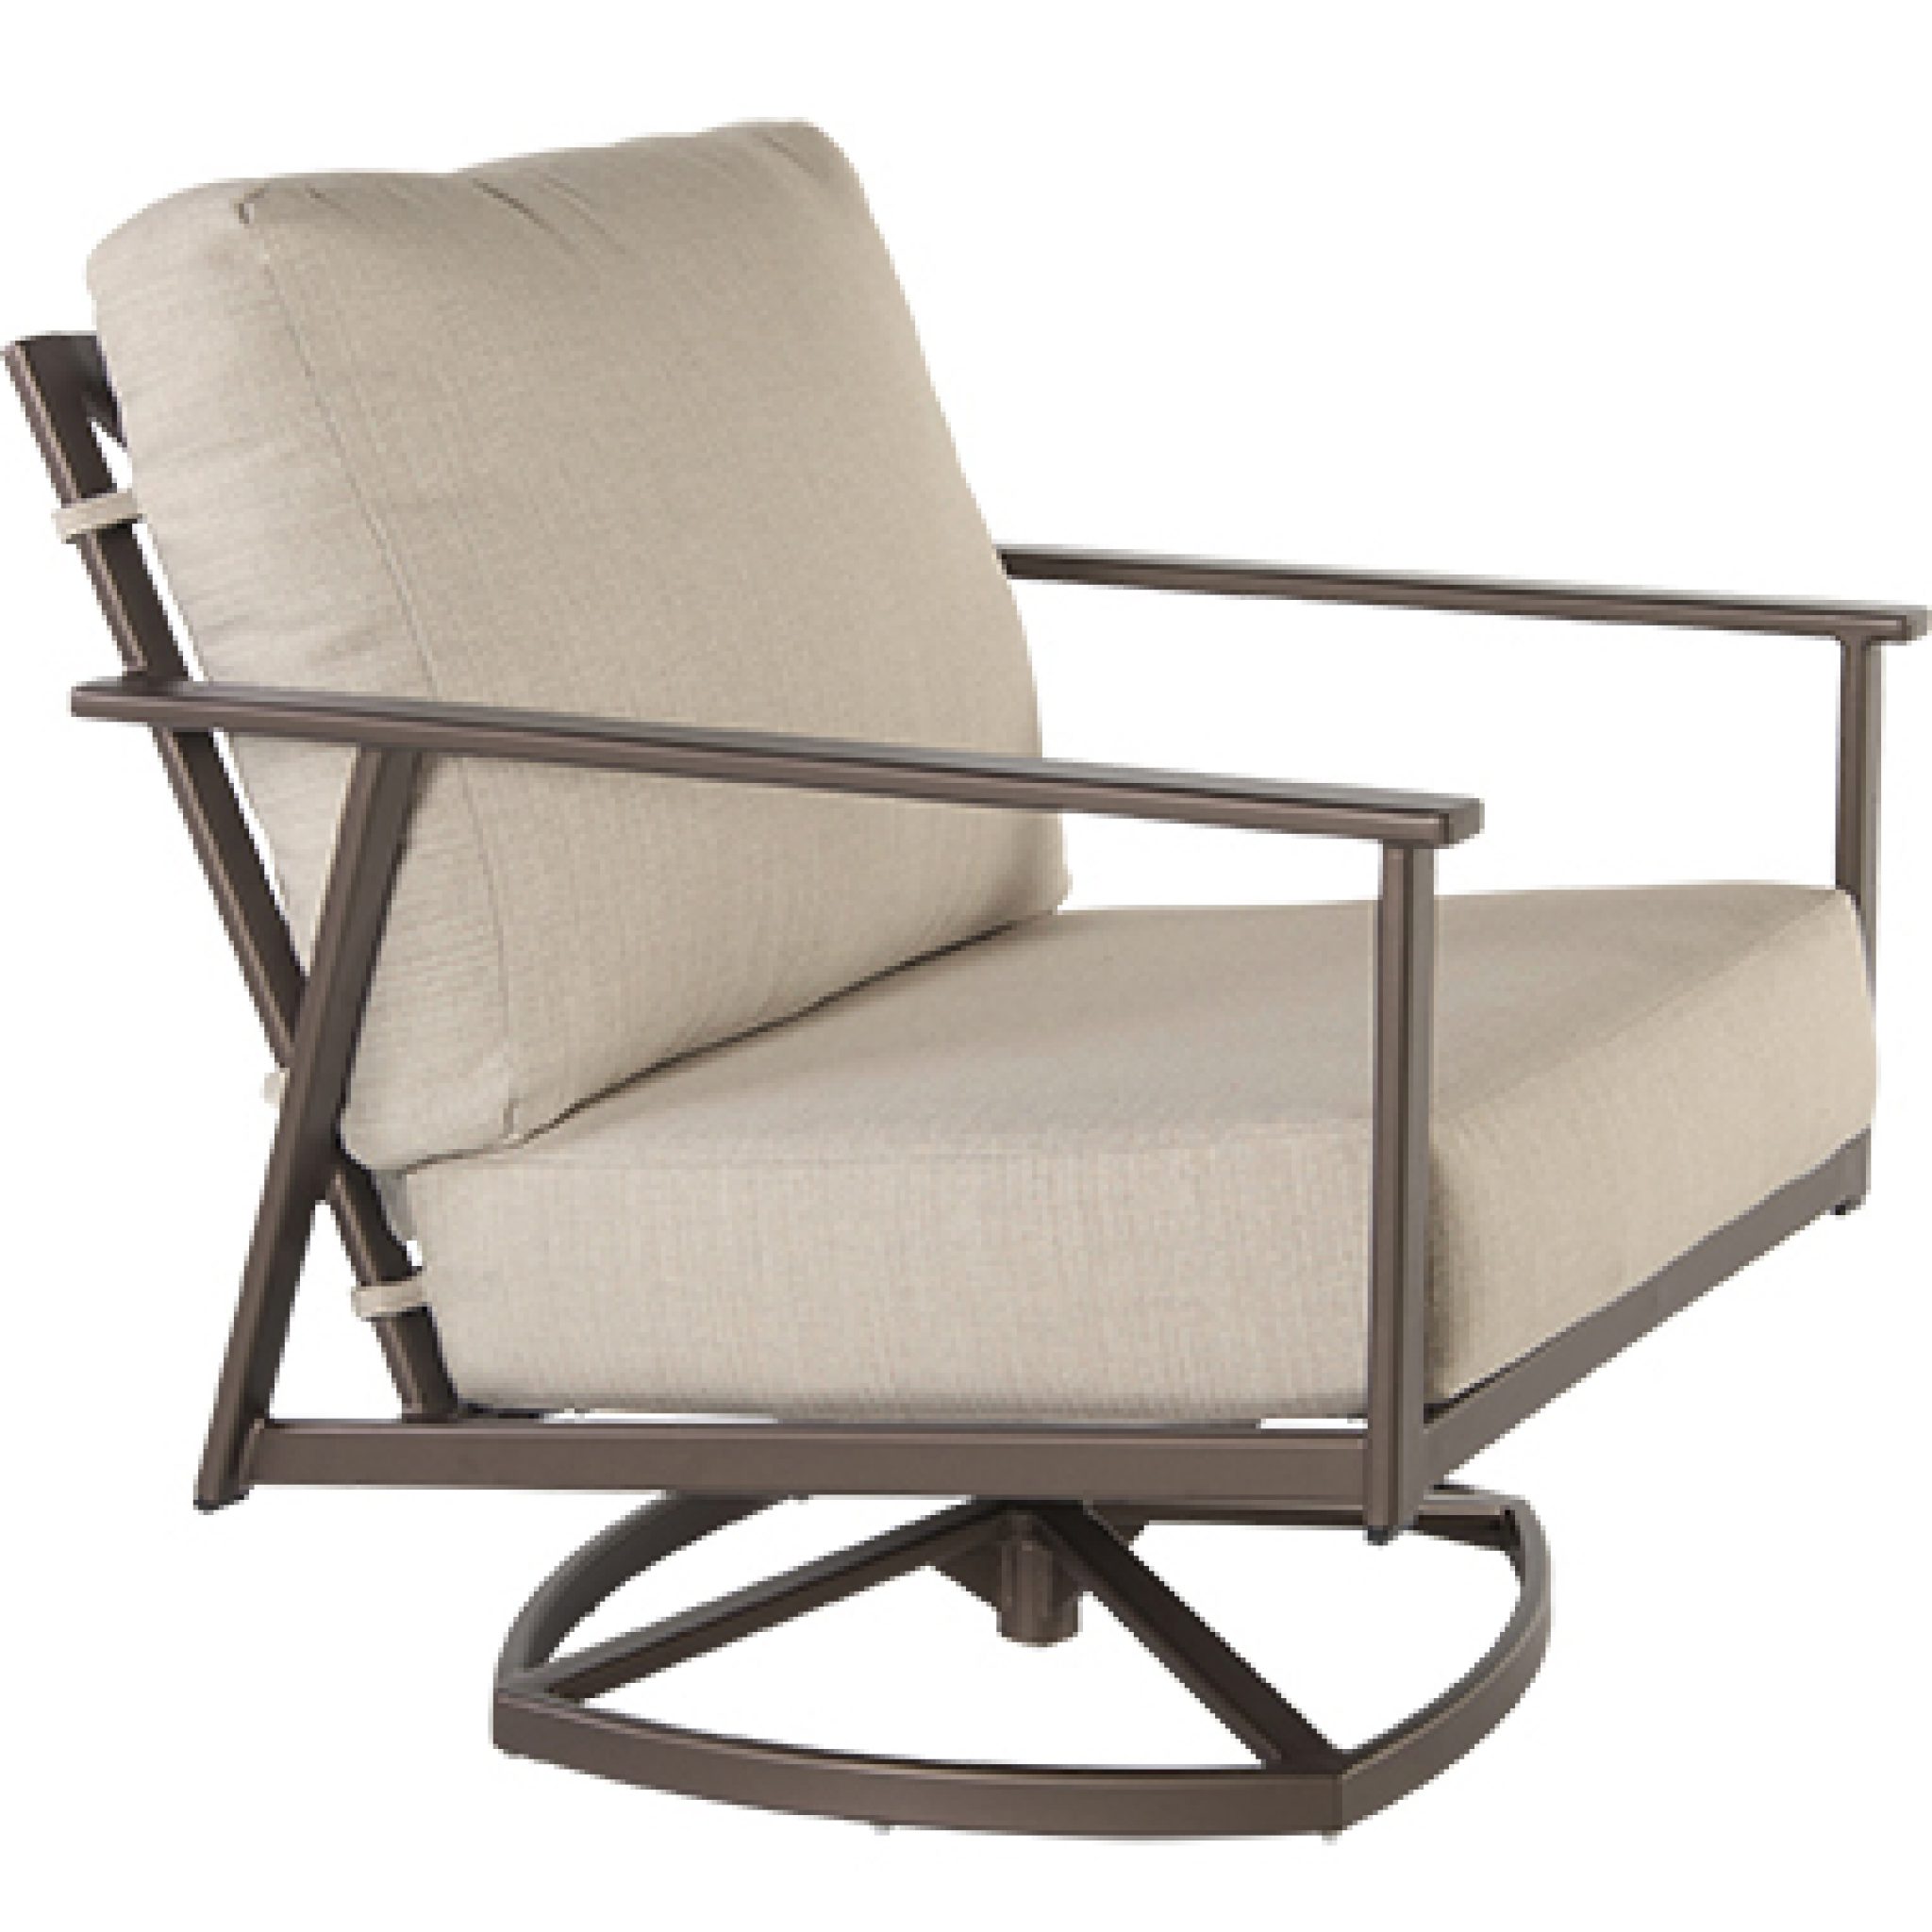 Marin Swivel Rocker Lounge Chair by Ow Lee